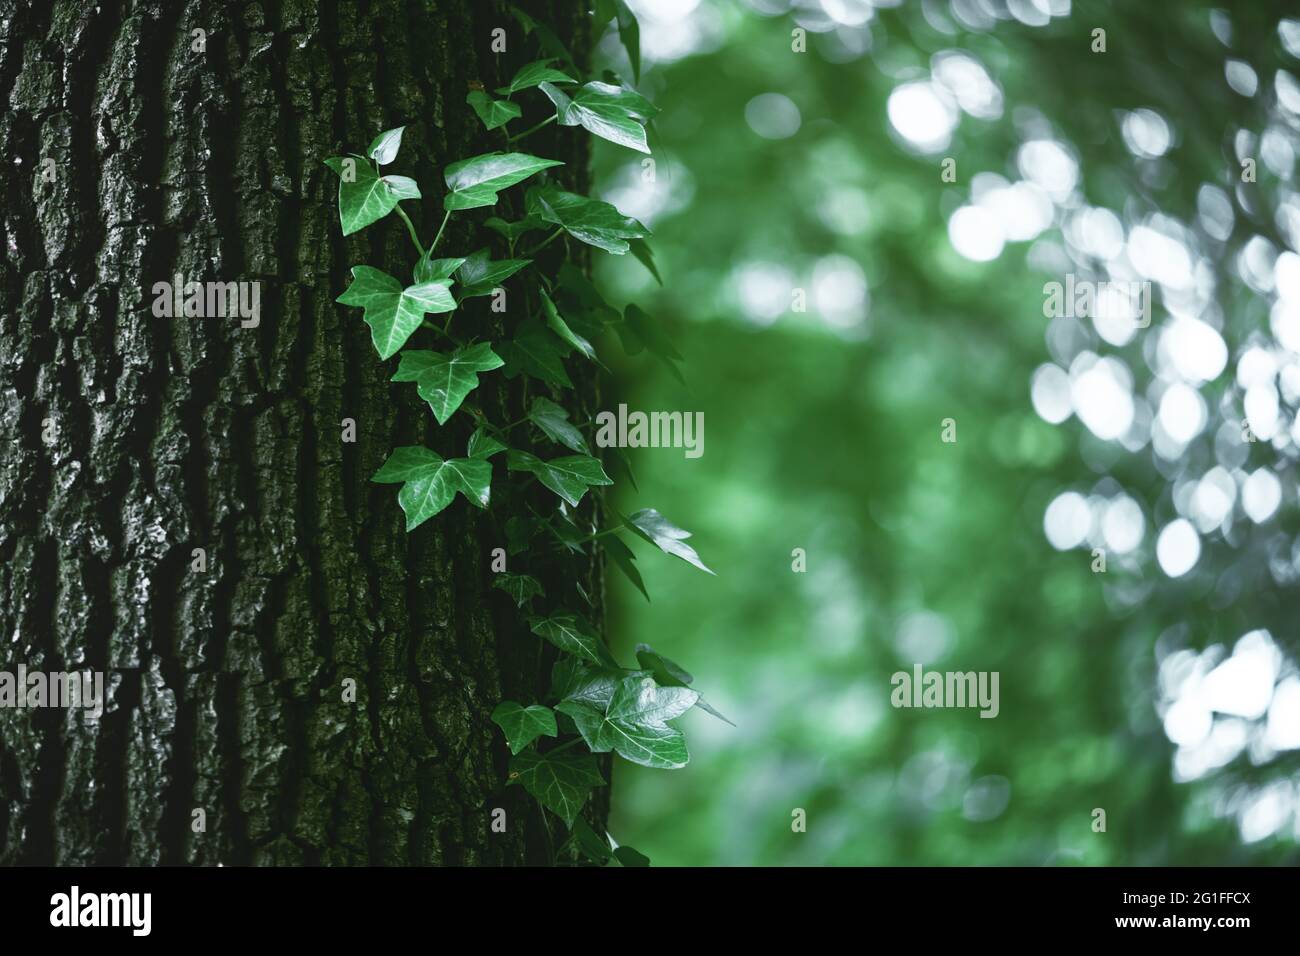 Ein Fragment eines Baumstammes mit grauer Rinde, bedeckt mit Reben saftiger grüner Efeu-Blätter. Natürlicher und organischer Hintergrund. Stockfoto